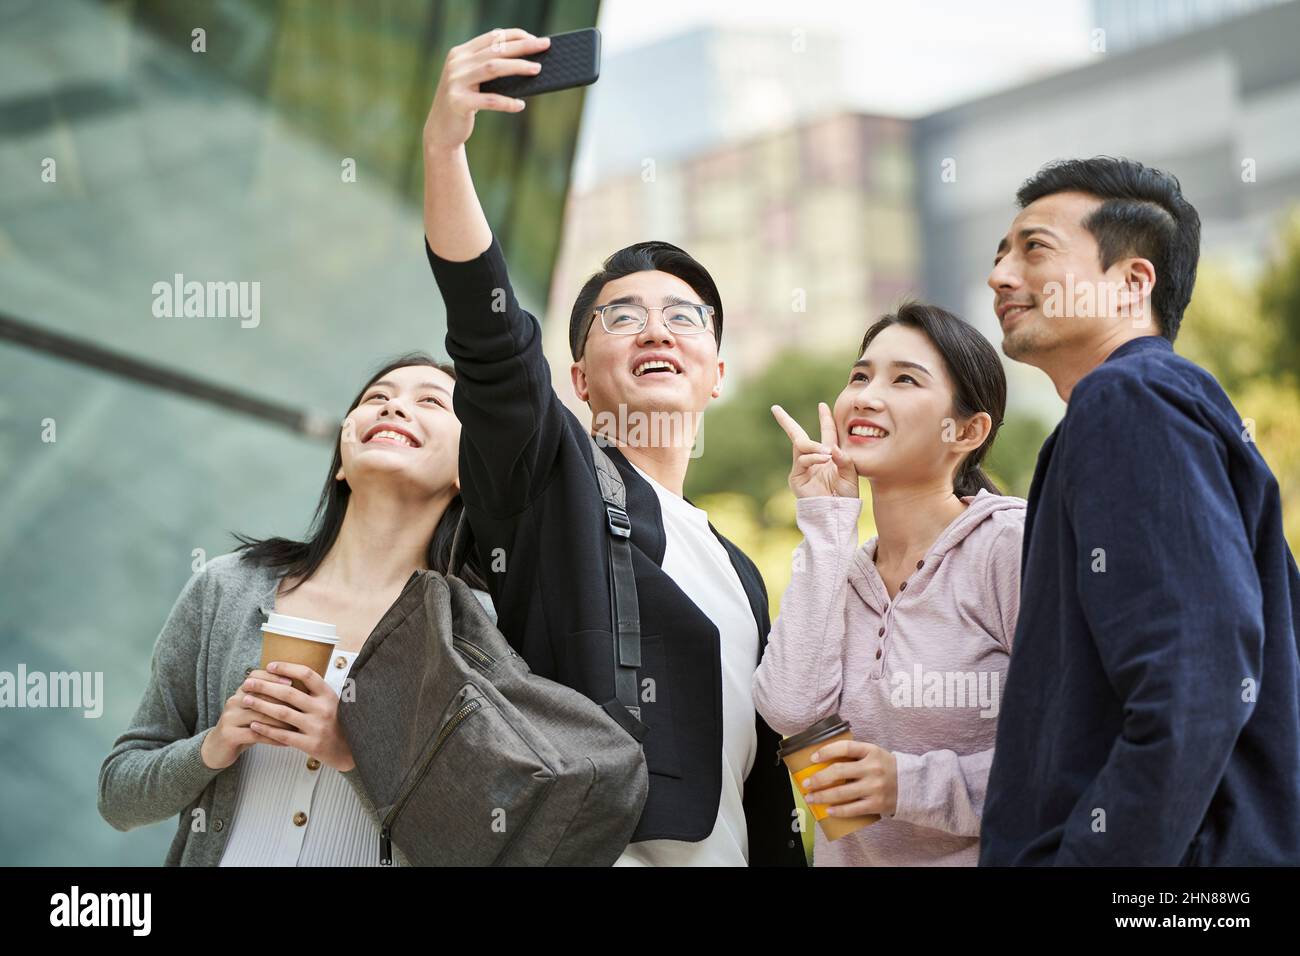 Eine Gruppe junger asiatischer Menschen, die auf der Straße ein Selfie mit dem Handy machen, glücklich und lächelnd Stockfoto